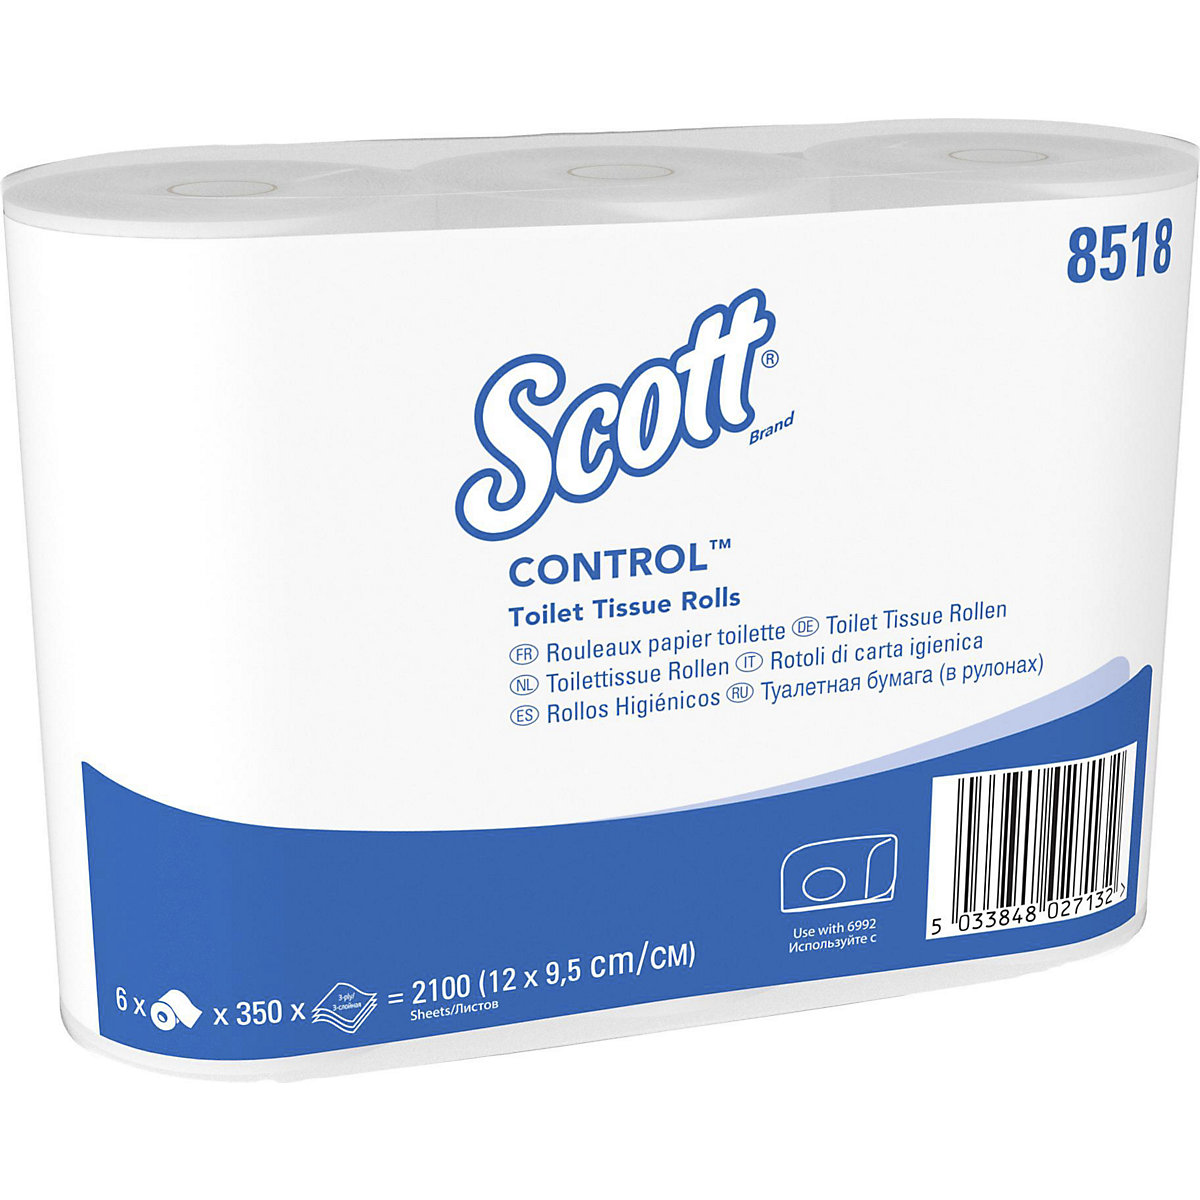 Standaard toiletpapier van Scott® CONTROL&trade; - Kimberly-Clark